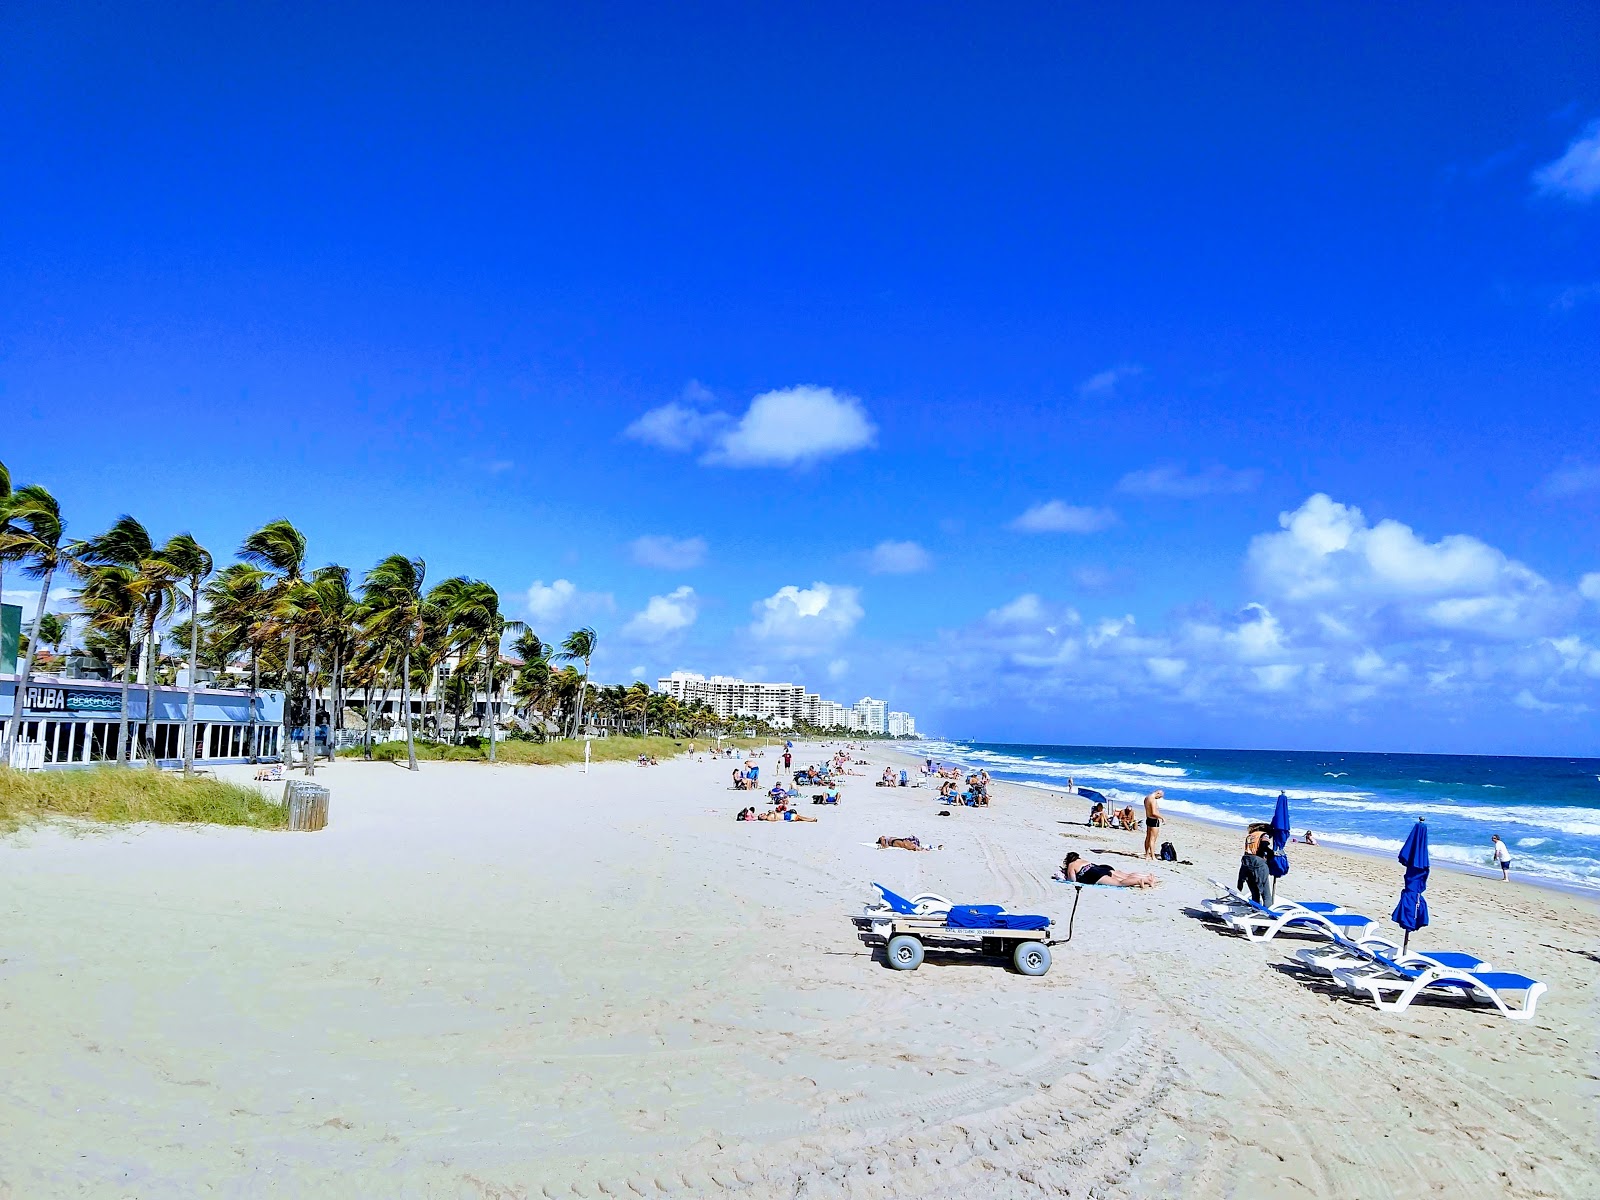 Zdjęcie Fort Lauderdale beach z powierzchnią jasny piasek